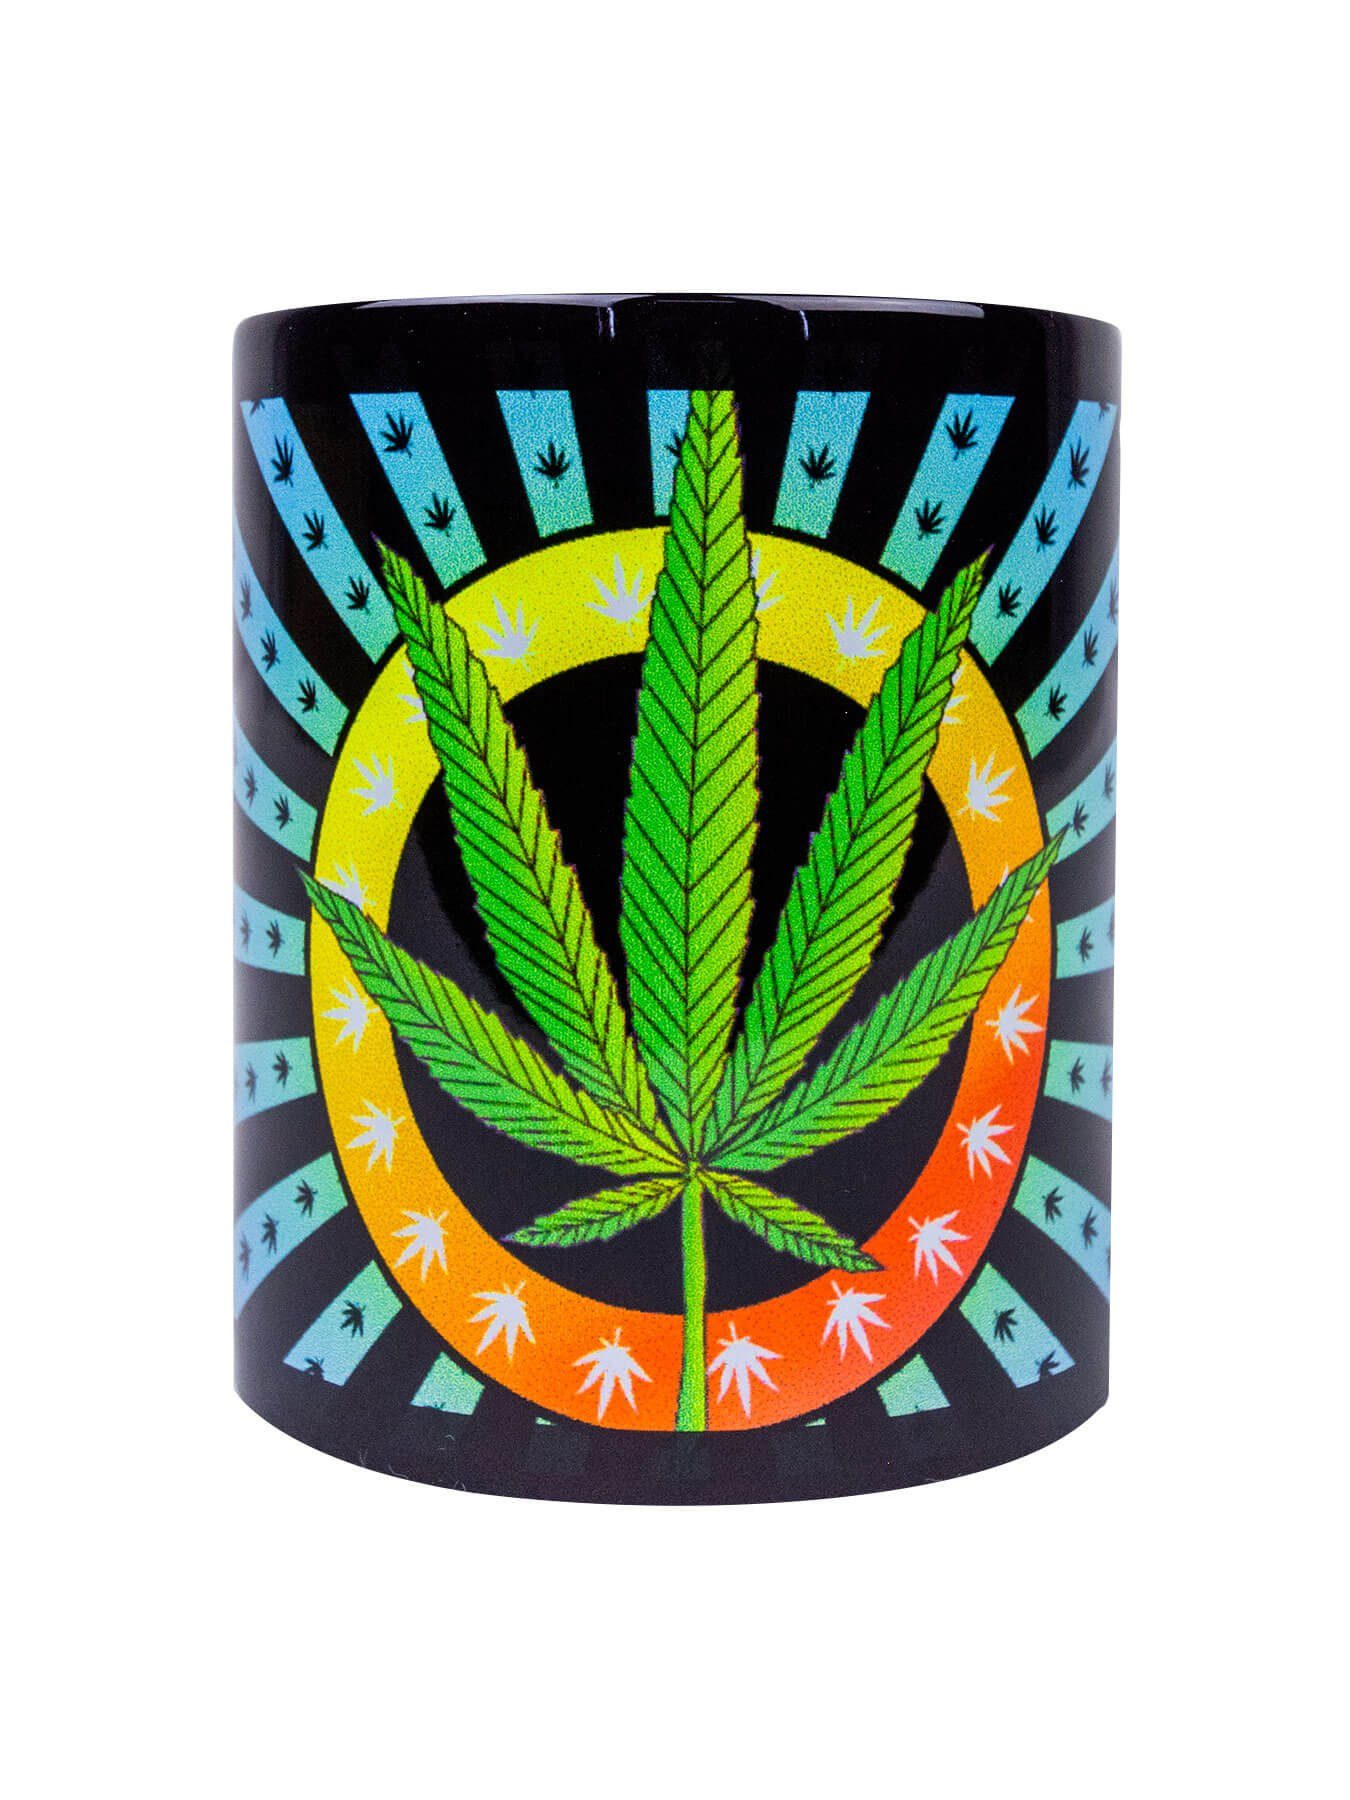 PSYWORK Tasse Fluo Cup Neon "Weed Motiv unter Leaf", Keramik, Schwarzlicht UV-aktiv, leuchtet Tasse